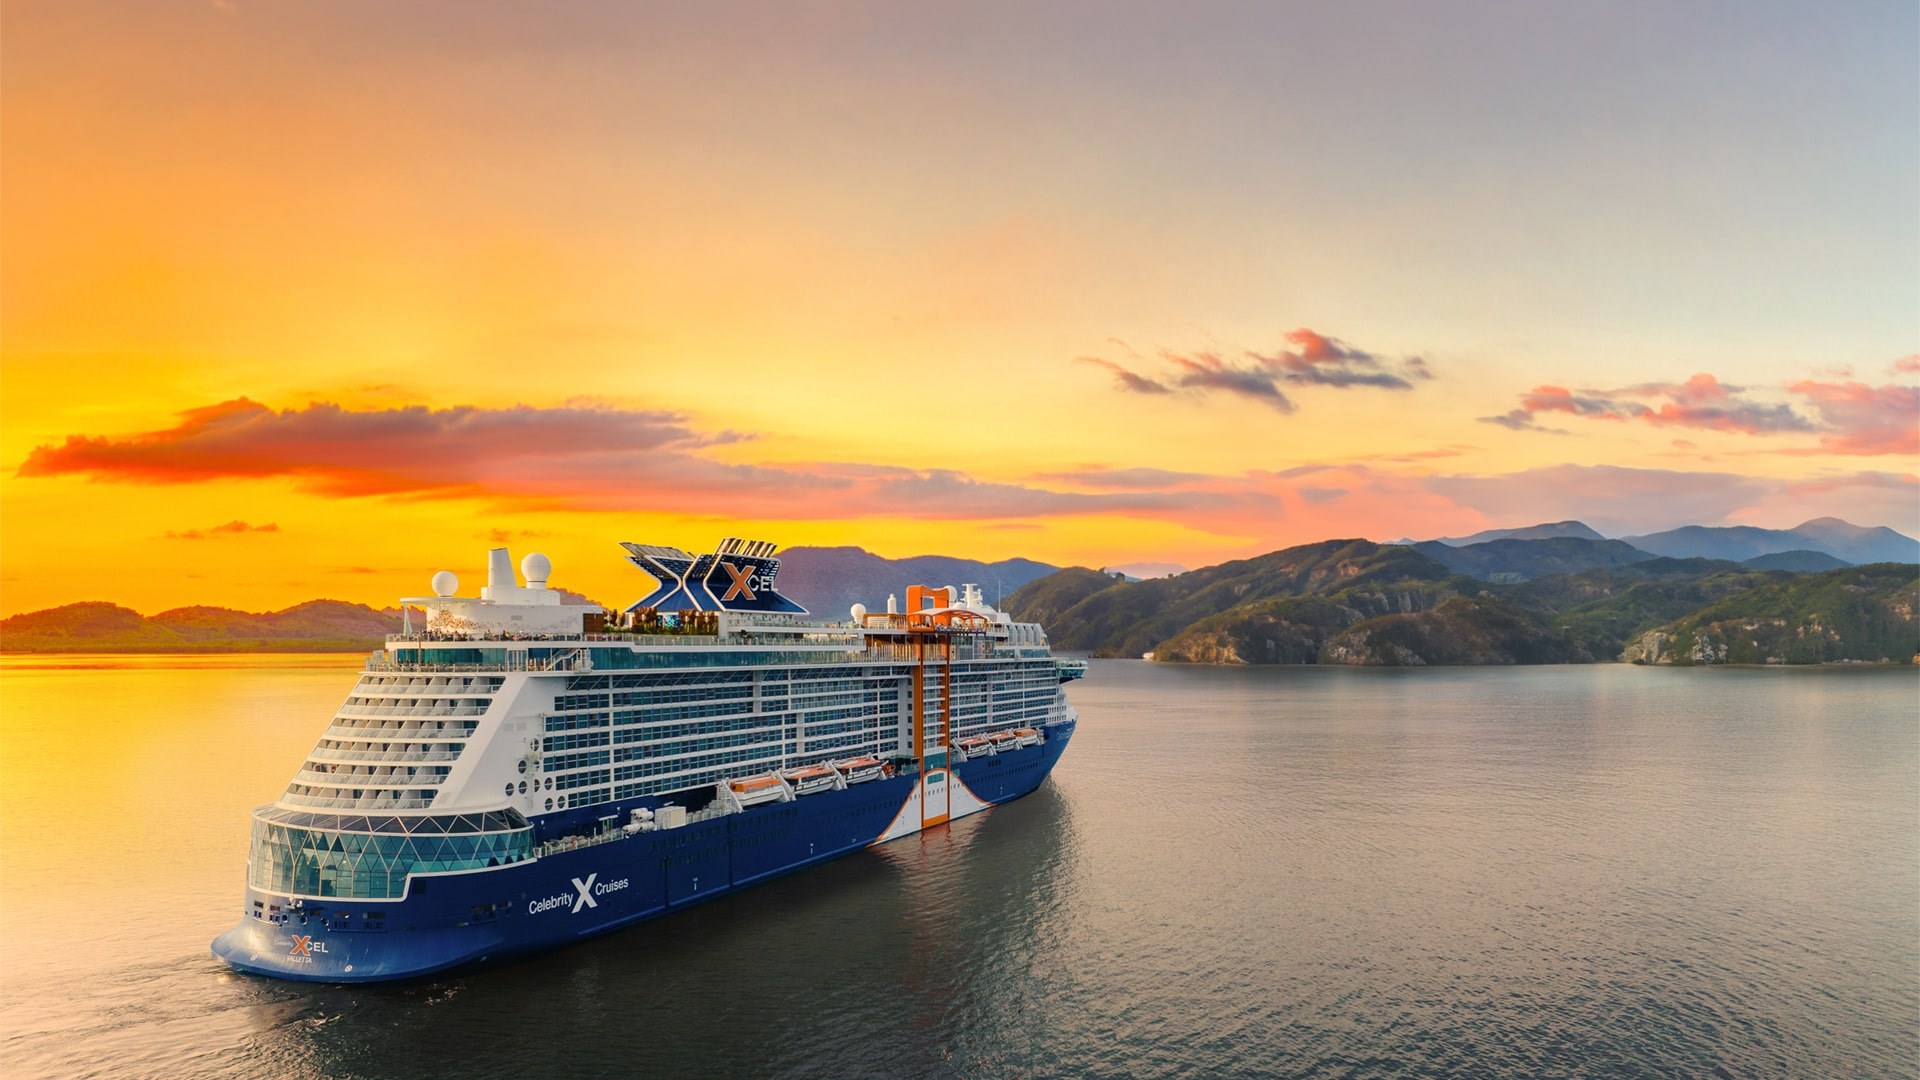 image of celebrity cruises cruise ship at sunset